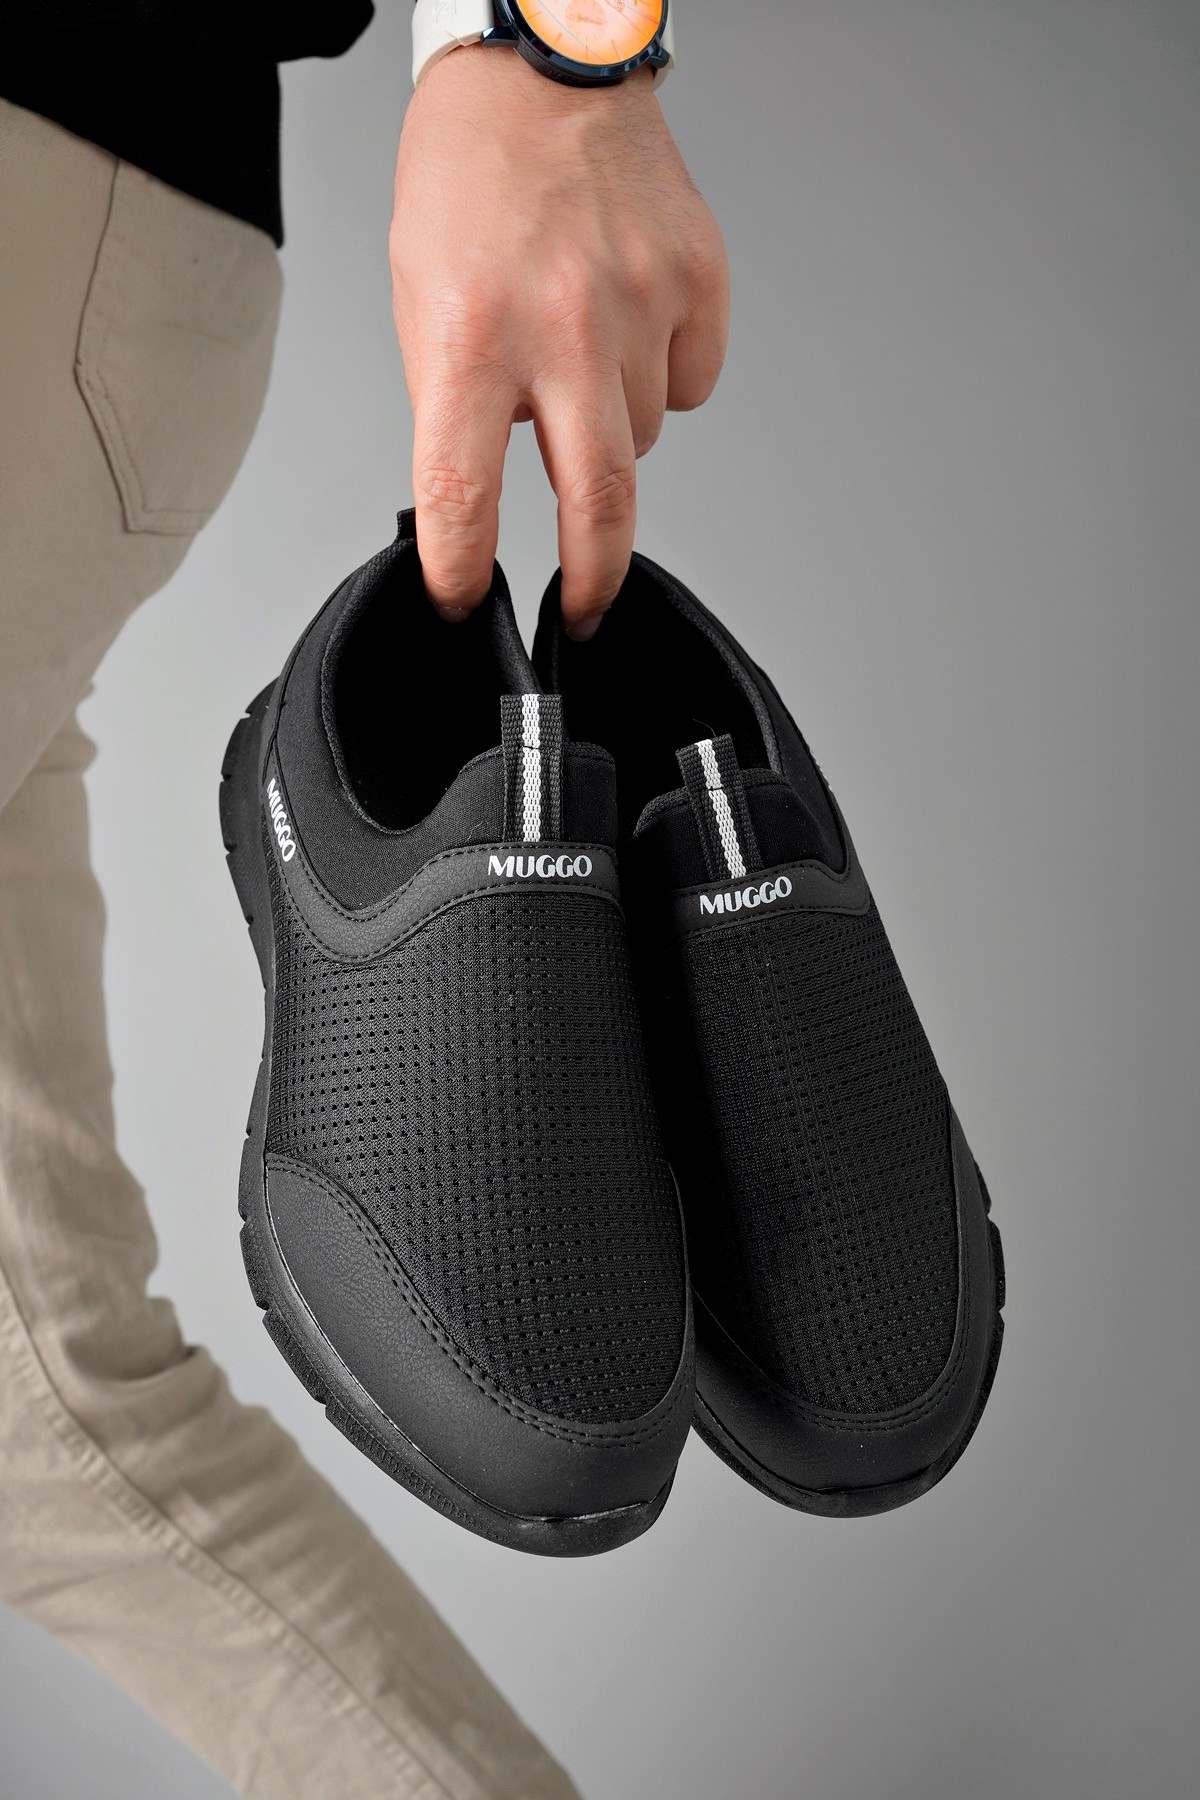 Muggo PODGO Garantili Unisex Ortopedik Bağcıksız Nefes Alabilen Hafif Yürüyüş Sneaker Spor Ayakkabı